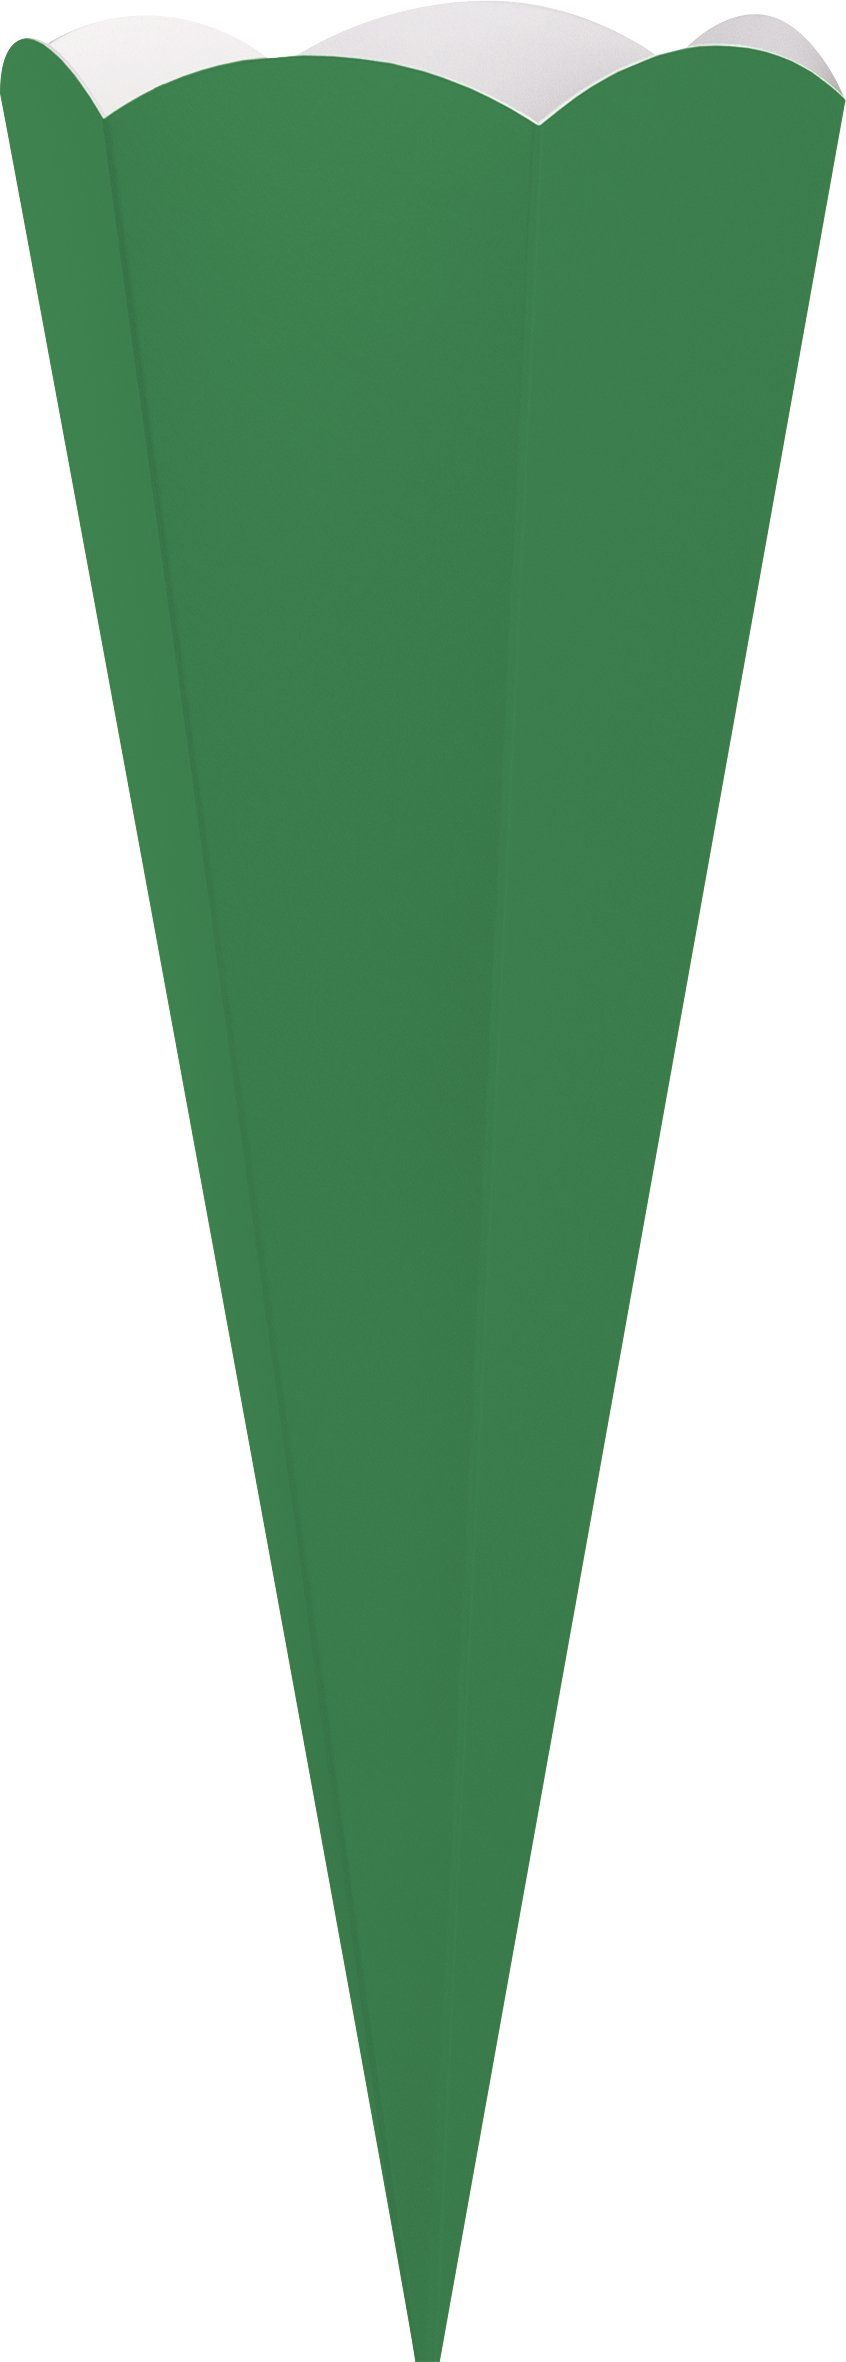 Heyda Schultüte 41 cm Geschwister-Schultüten-Zuschnitt, Grün